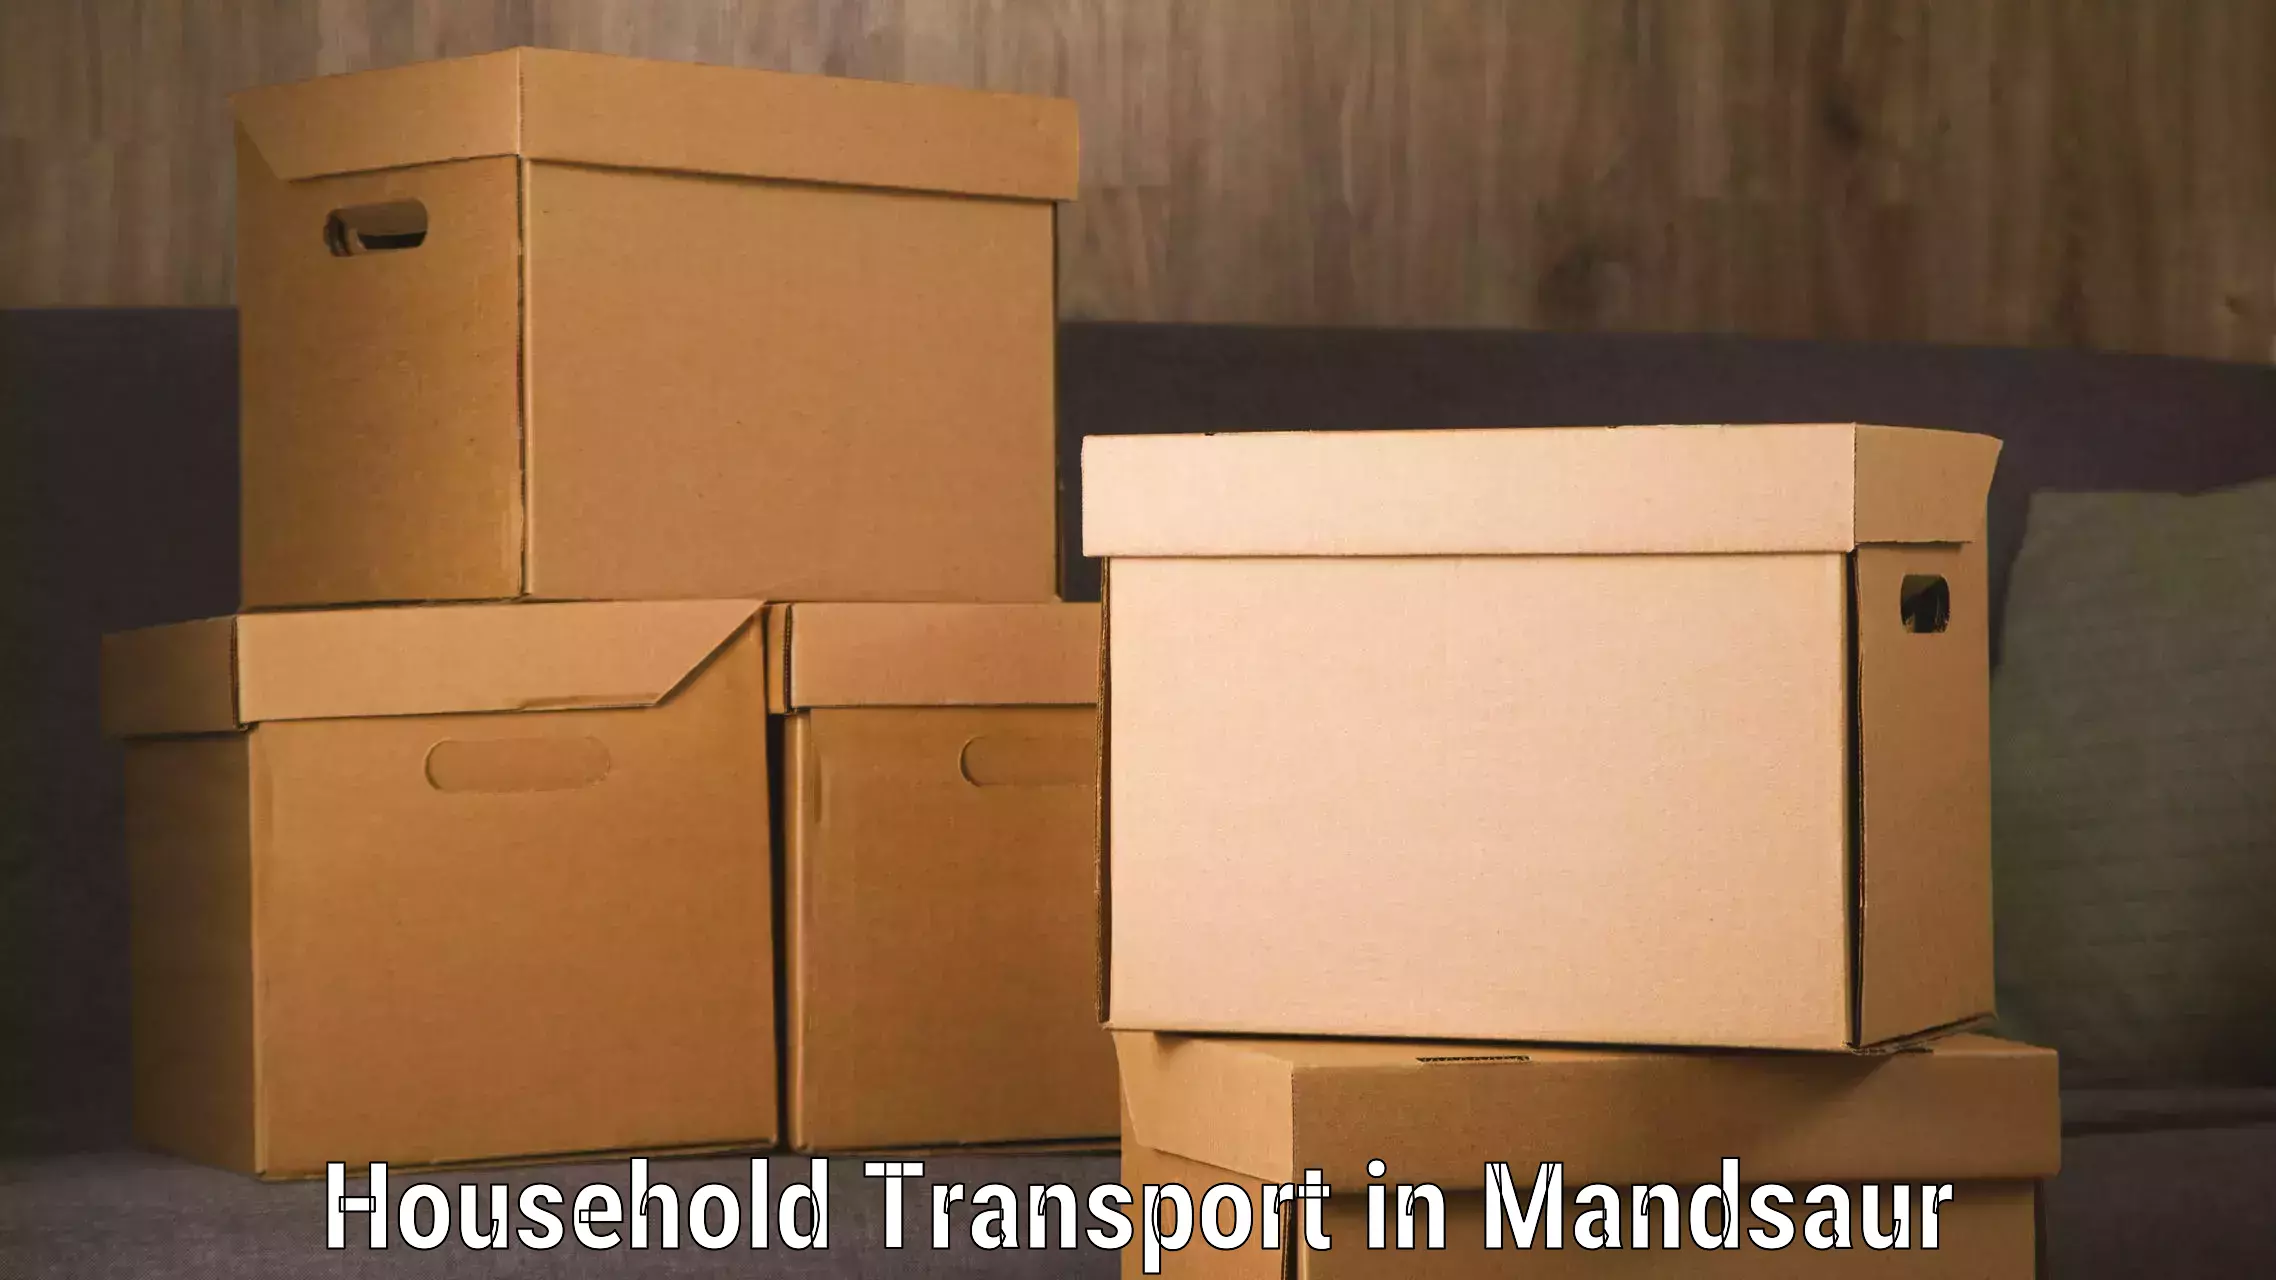 Door-to-door relocation services in Mandsaur